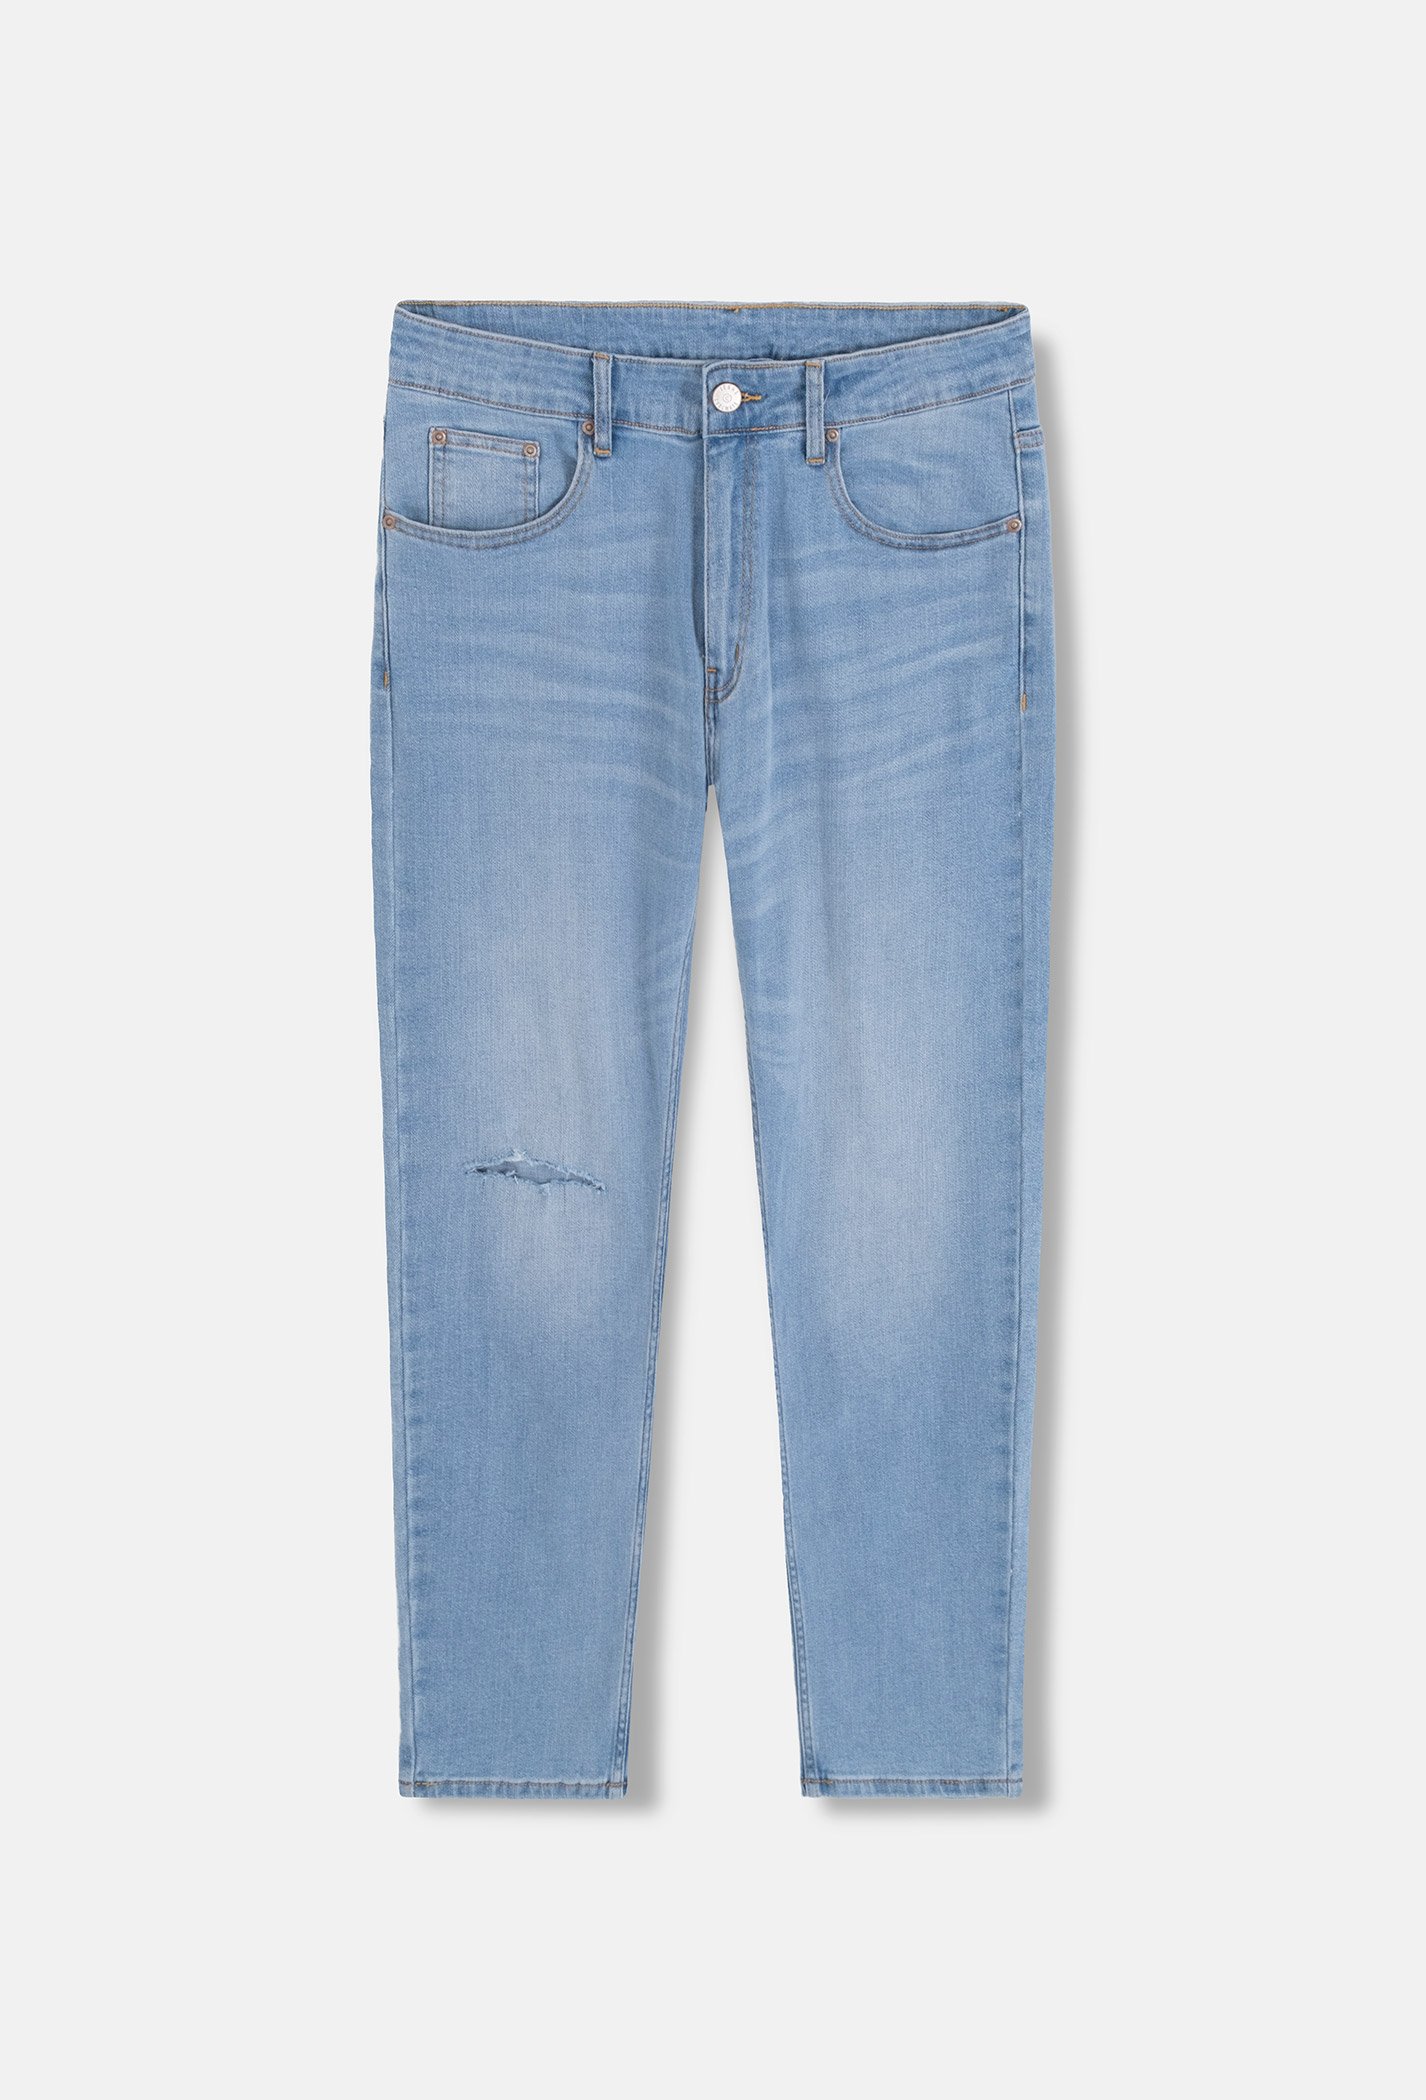 Quần Jeans Basic Slimfit xé gối - màu Xanh nhạt  2